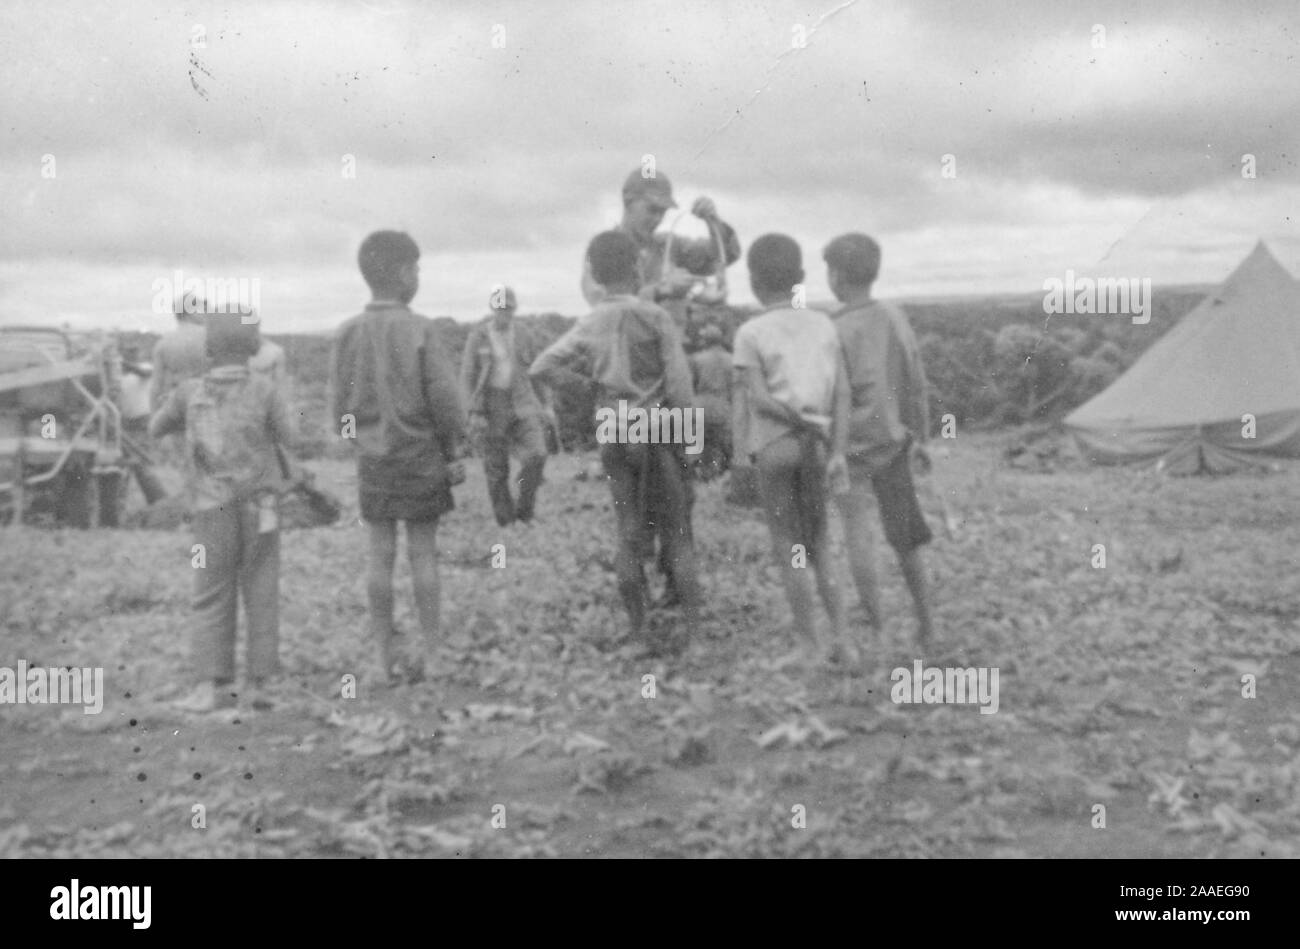 Eine kleine Gruppe von Kindern, von der Rückseite, stand in einem landwirtschaftlichen Gebiet an einem sonnigen Tag, einen uniformierten Offizier ein Objekt manipulieren, mit Zelten und anderen Soldaten (darunter ein Mann auf Krücken) im Hintergrund, Vietnam, 1965. () Stockfoto